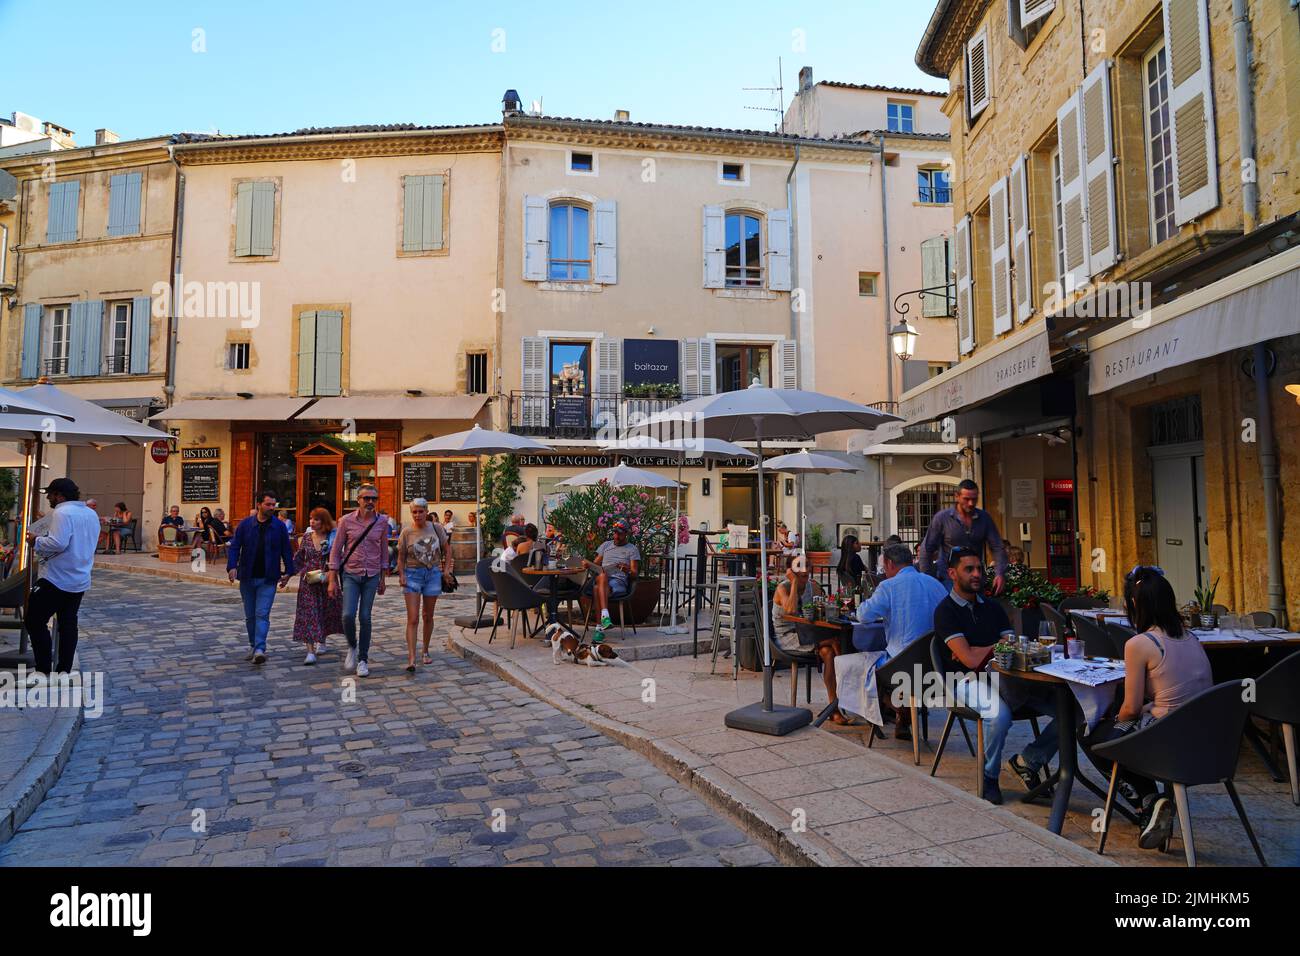 LOURMARIN, FRANKREICH -5 JUL 2021- Blick auf traditionelle Gebäude in Lourmarin, einer Stadt im Luberon-Gebiet von Vaucluse, Provence, Frankreich, benannt nach einem der b Stockfoto